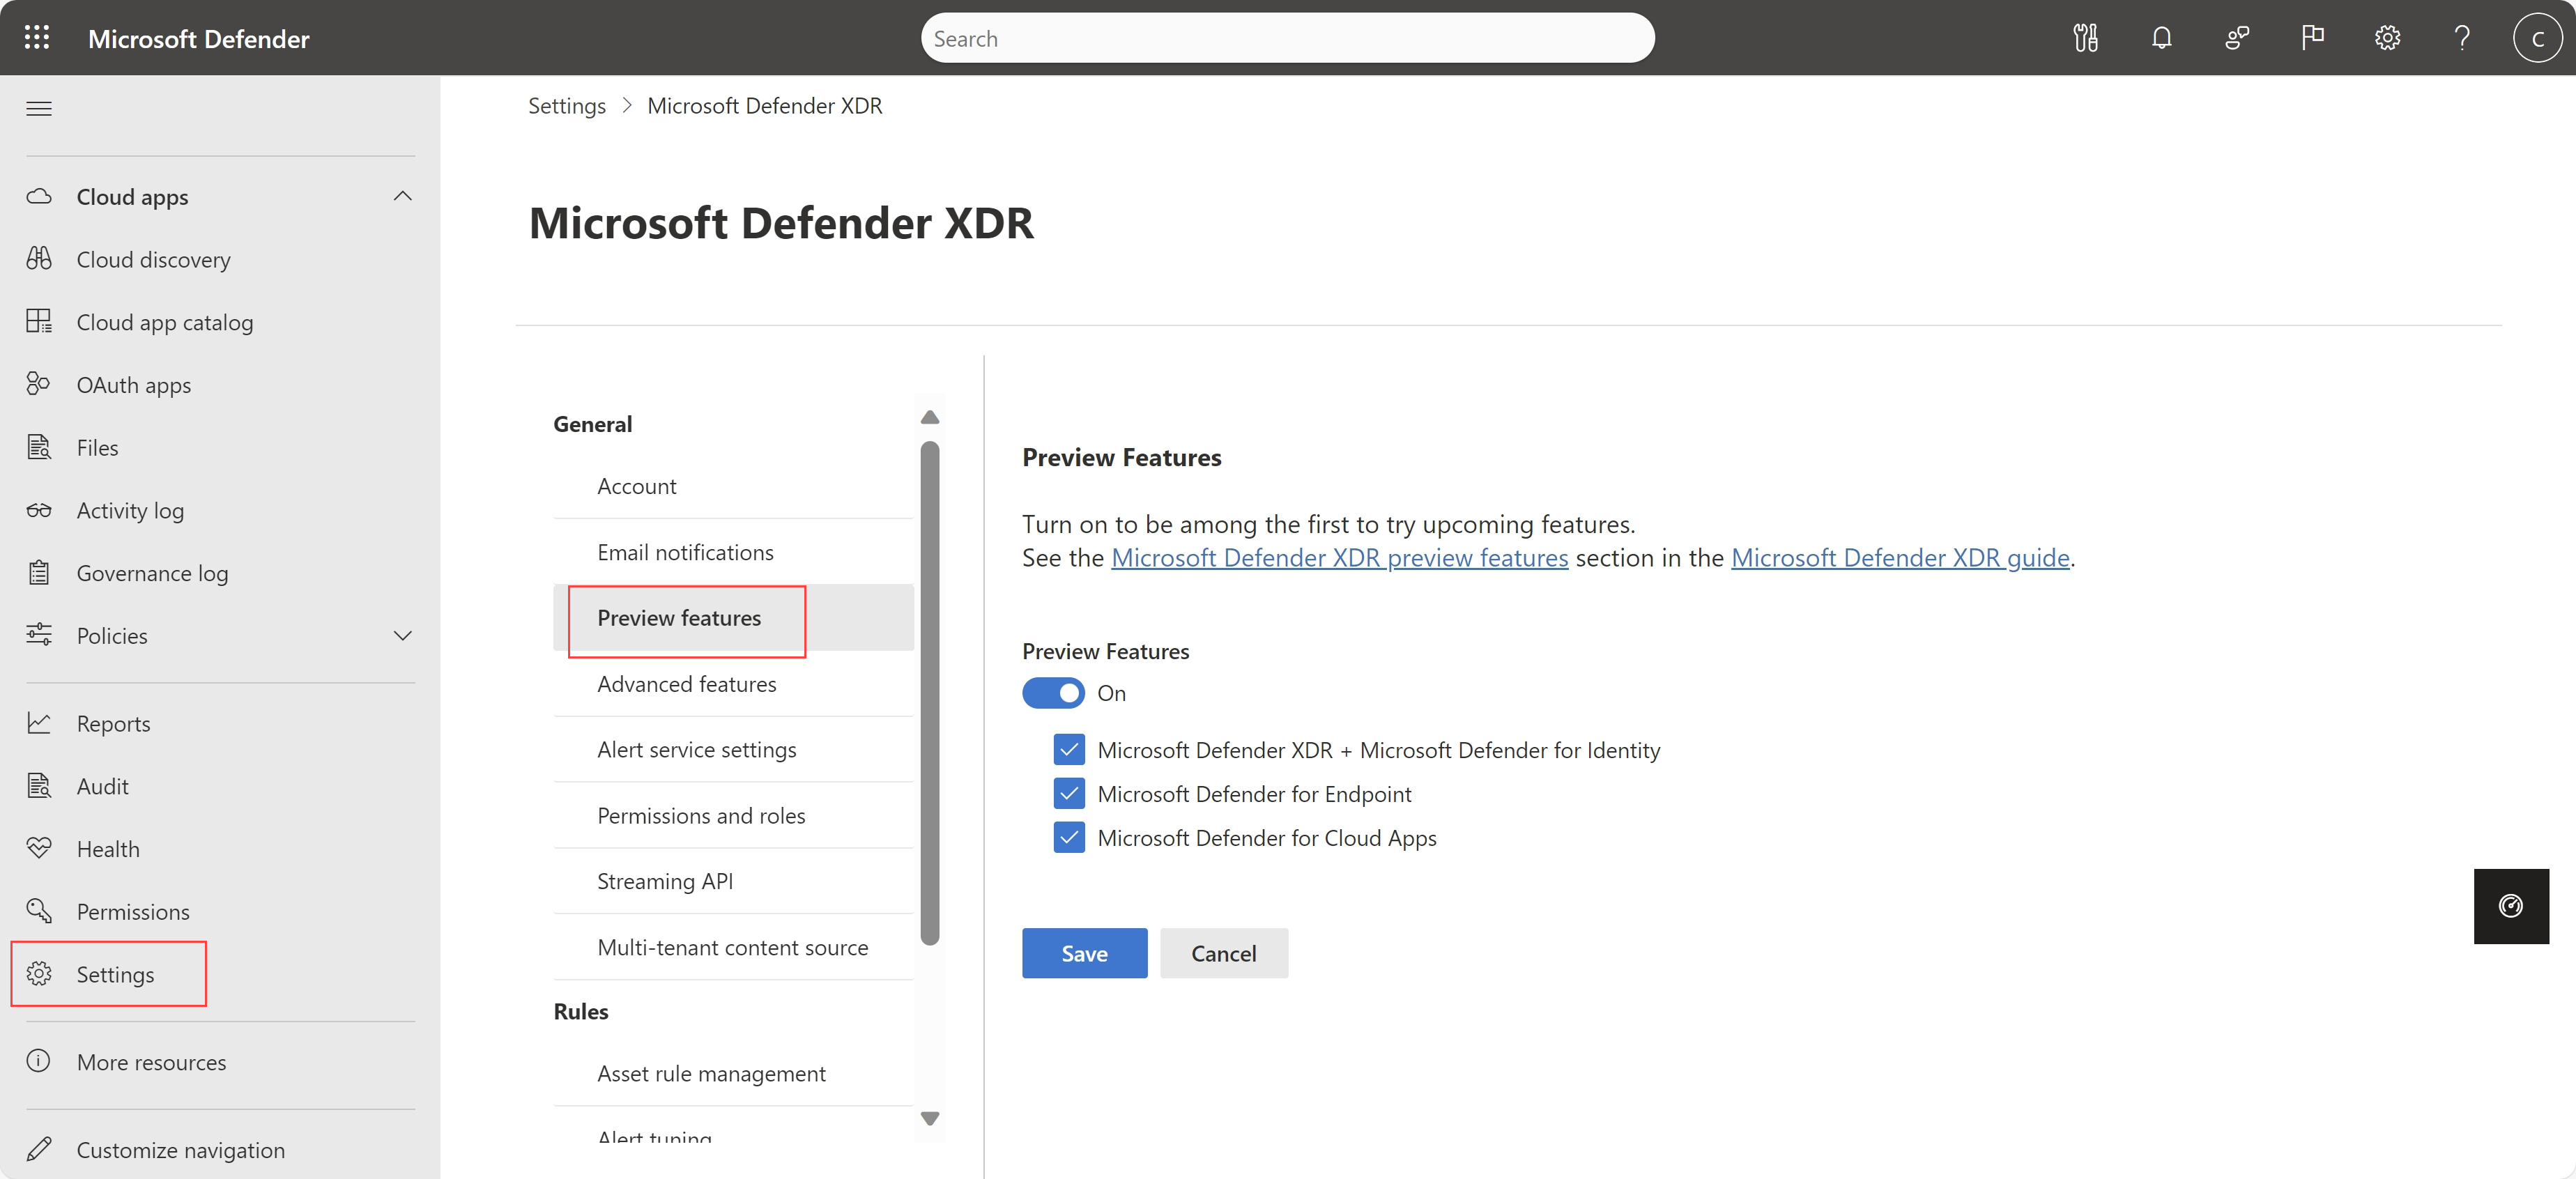 Captura de pantalla de la página de configuración de características en vista previa (GB) de Microsoft Defender XDR.